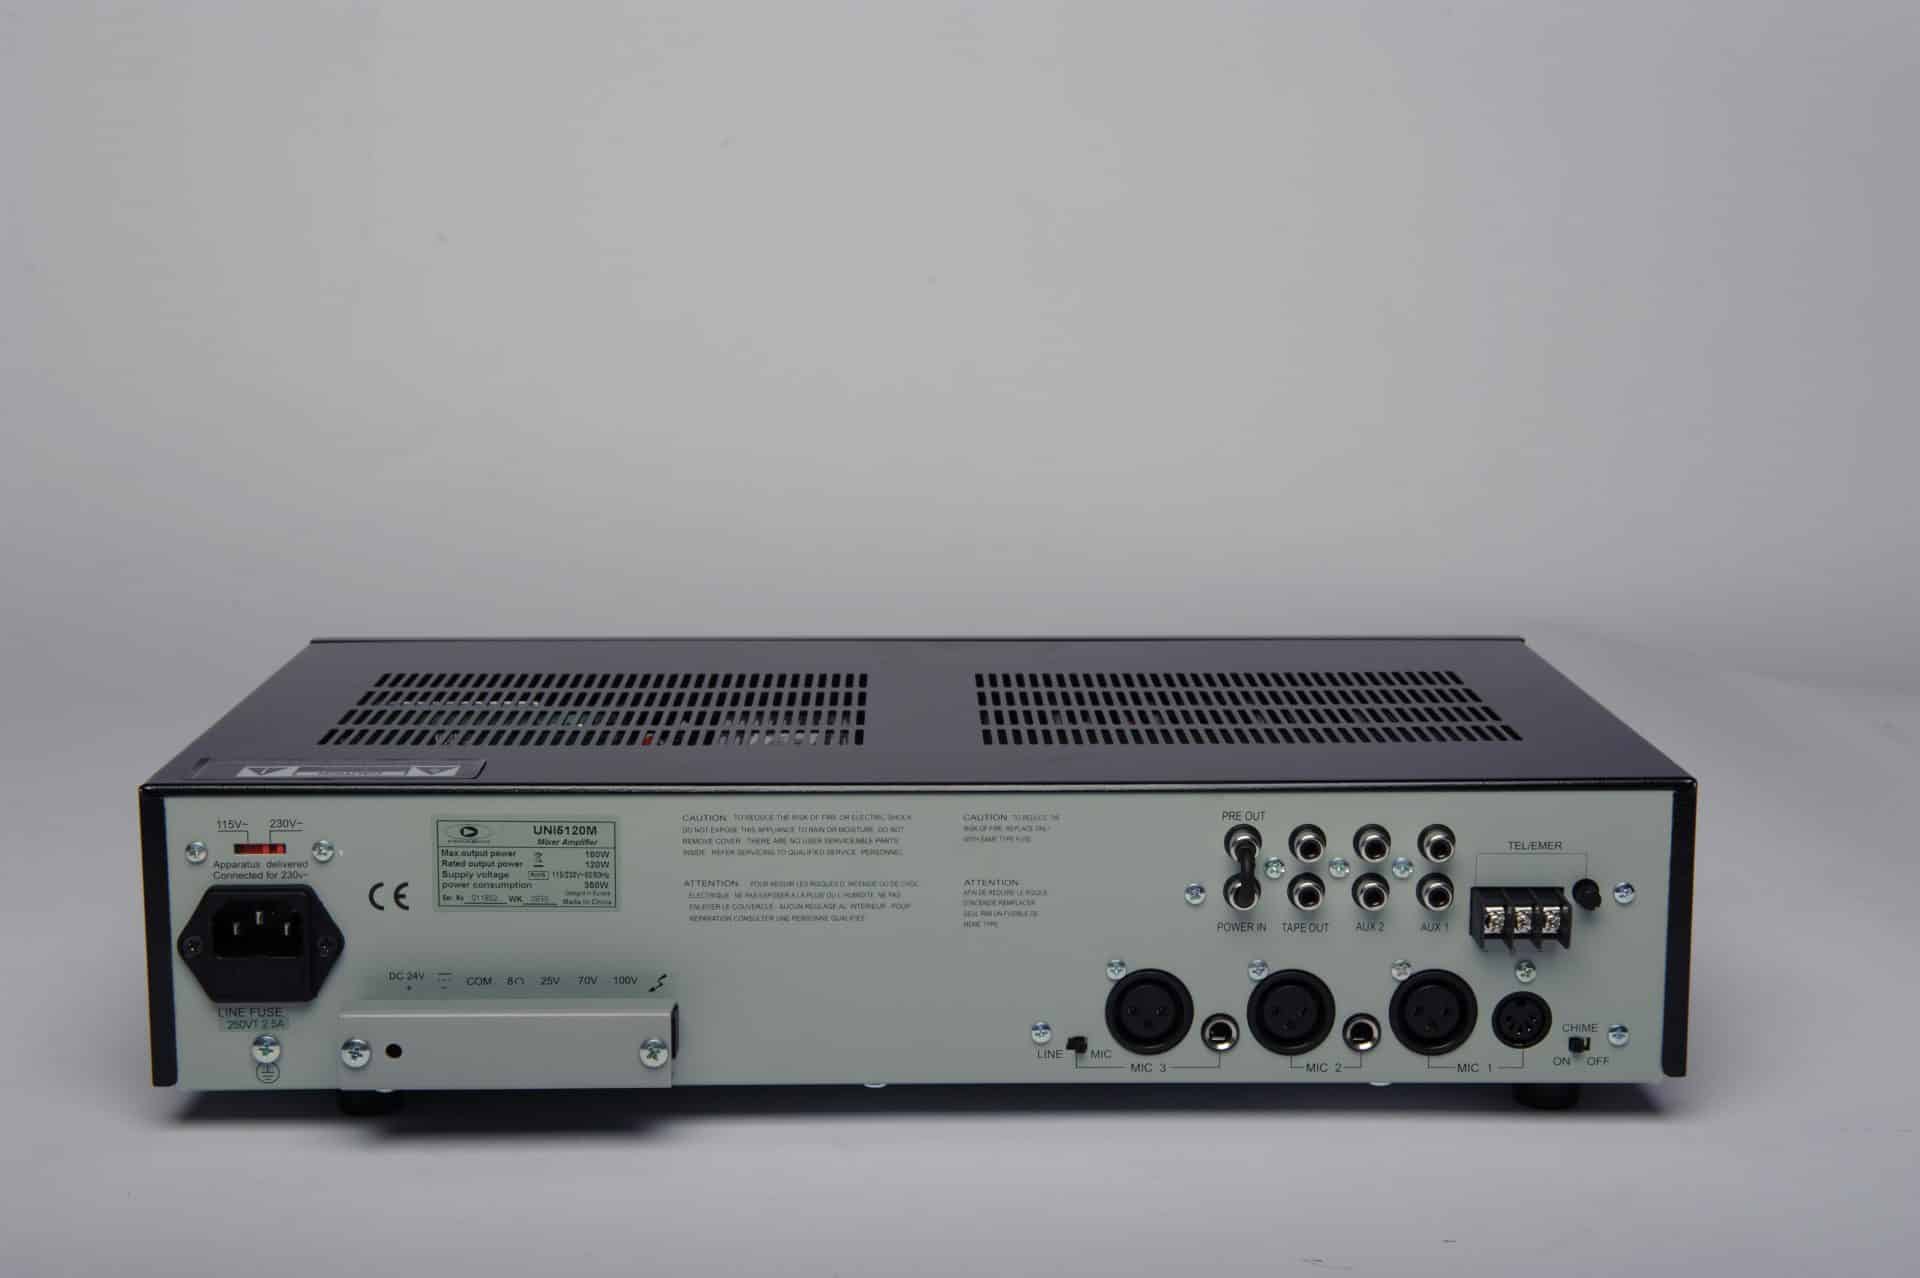 Sonoplay - S 6044 Amplificateurs compacts avec alimentation à décou